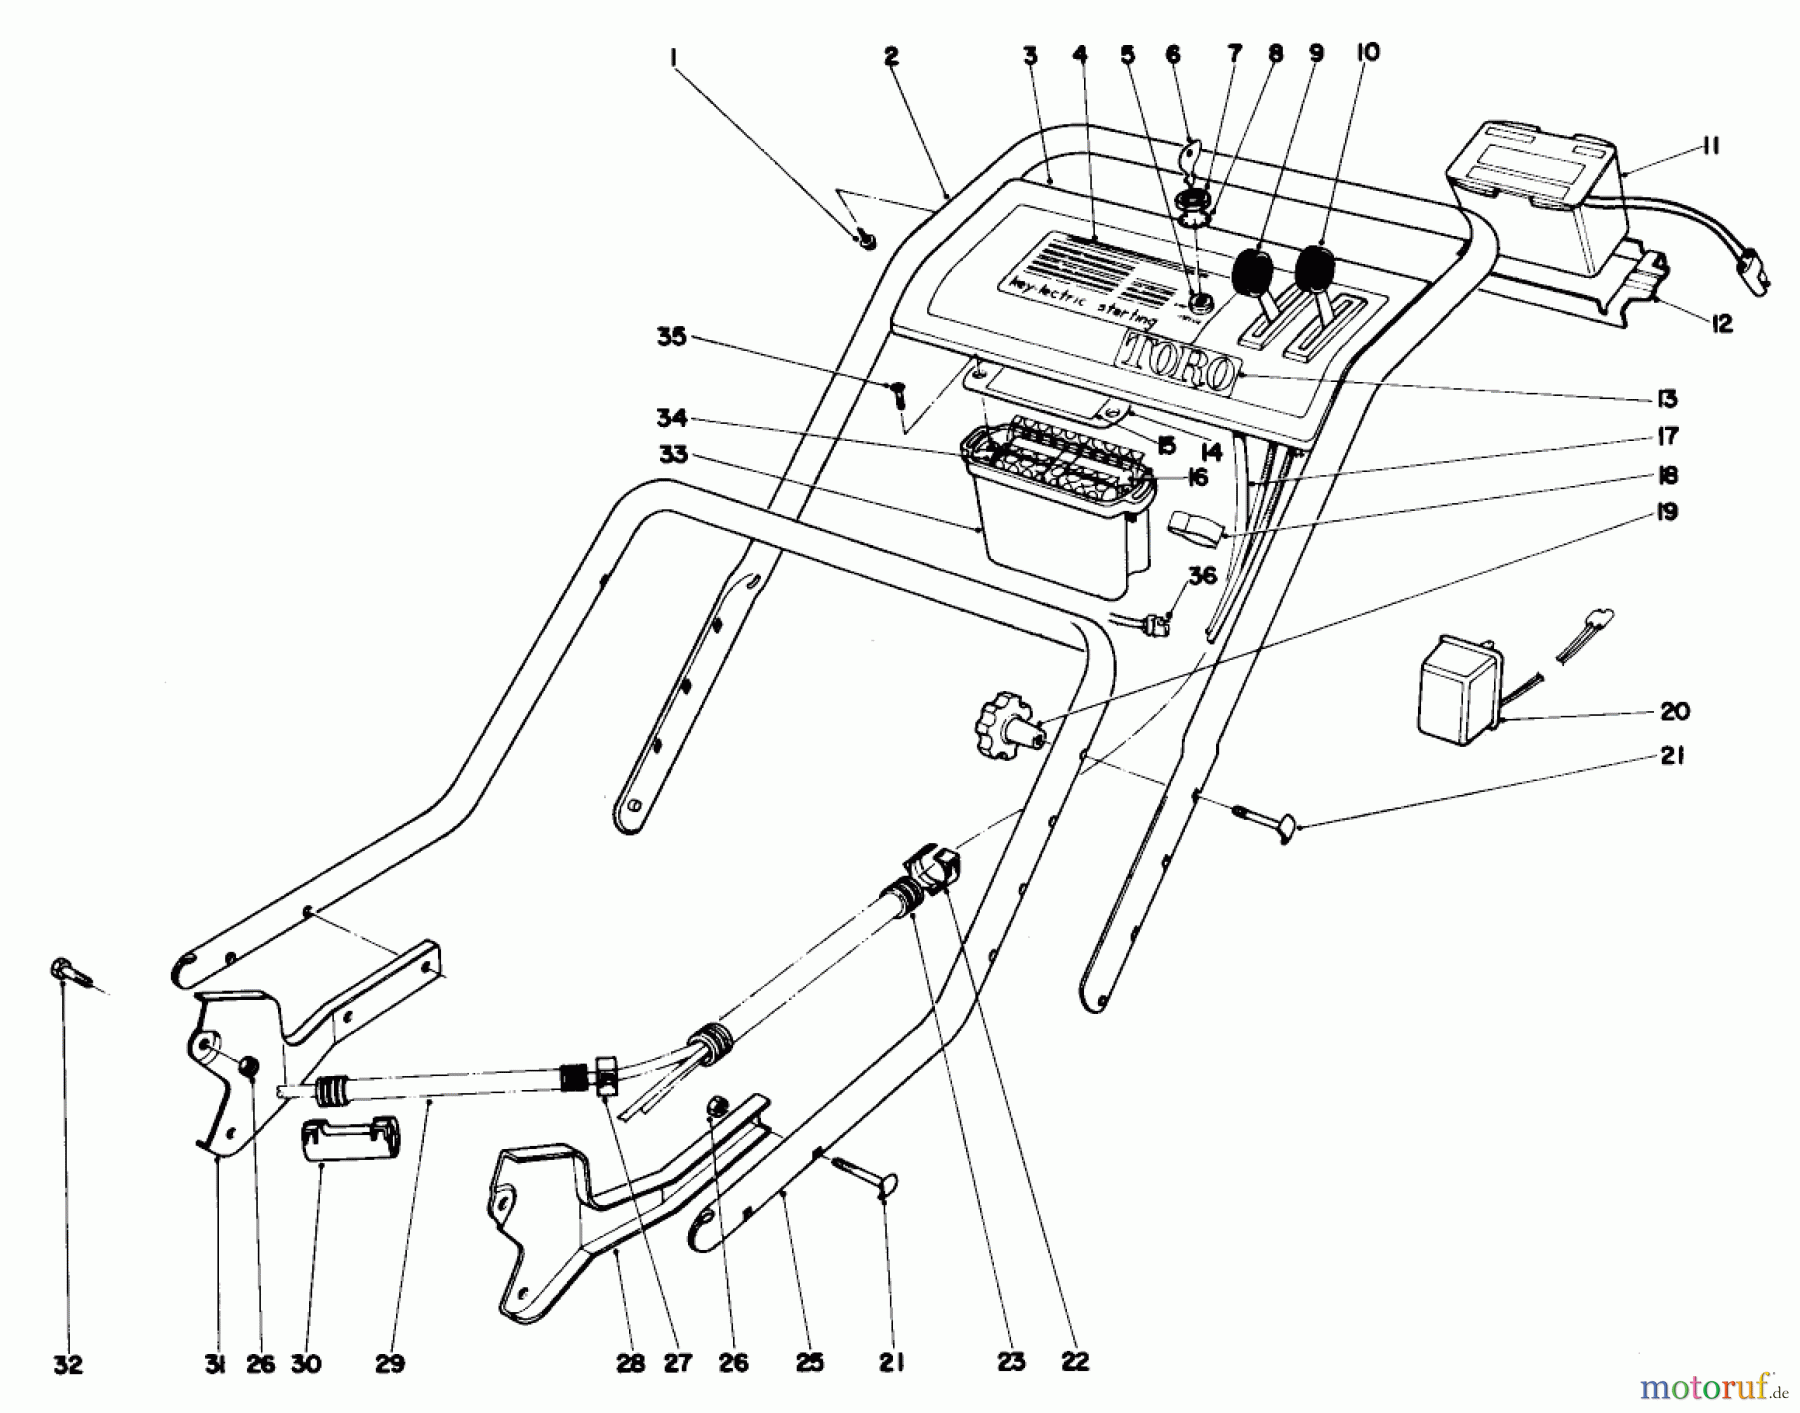  Toro Neu Mowers, Walk-Behind Seite 1 20440 - Toro Lawnmower, 1974 (4000001-4999999) HANDLE ASSEMBLY-MODEL NO. 20660